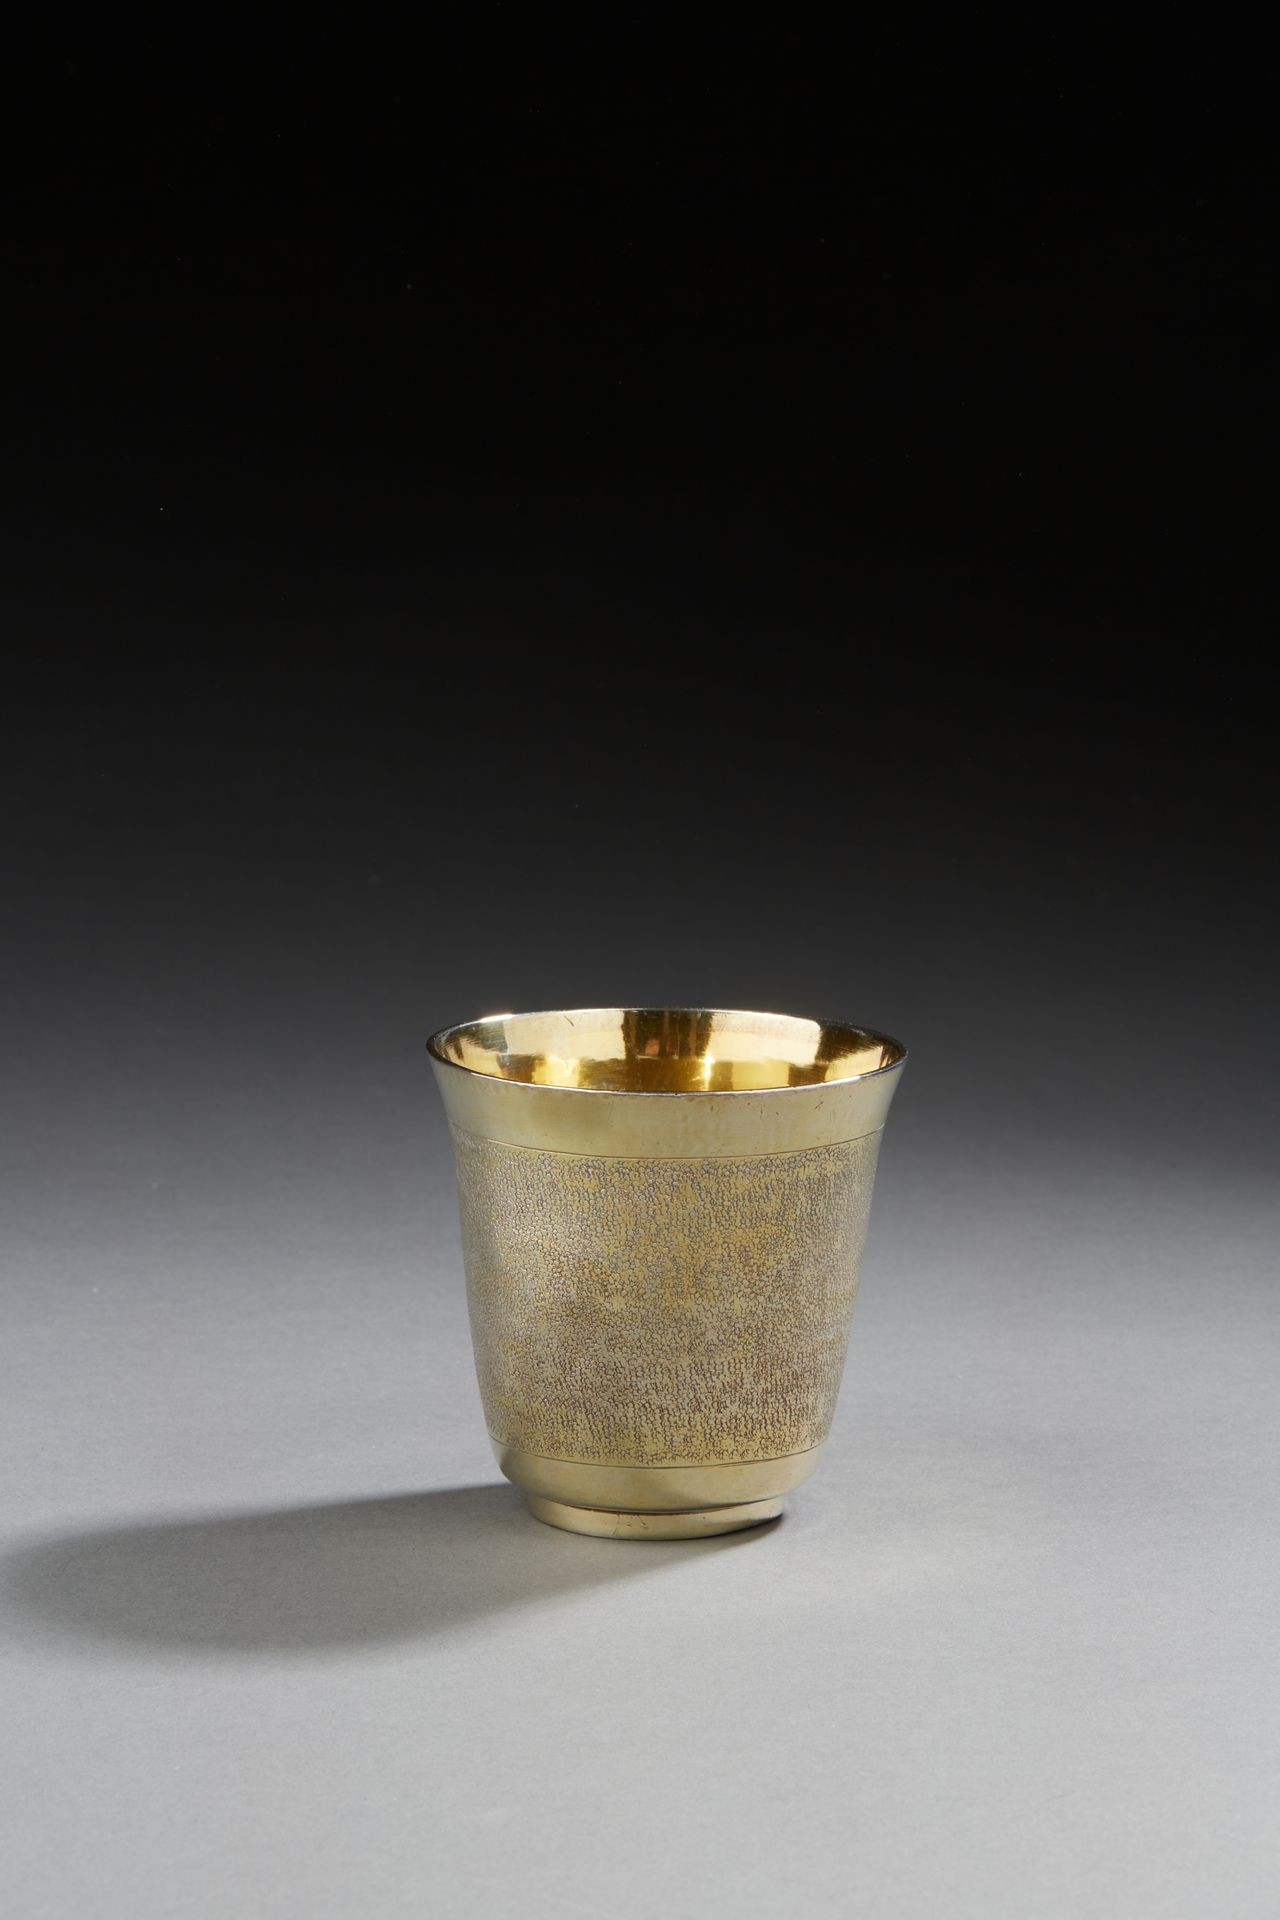 Null PARÍS 1690 - 1691
Un vaso de vermeil apoyado en un marco, del que se dice q&hellip;